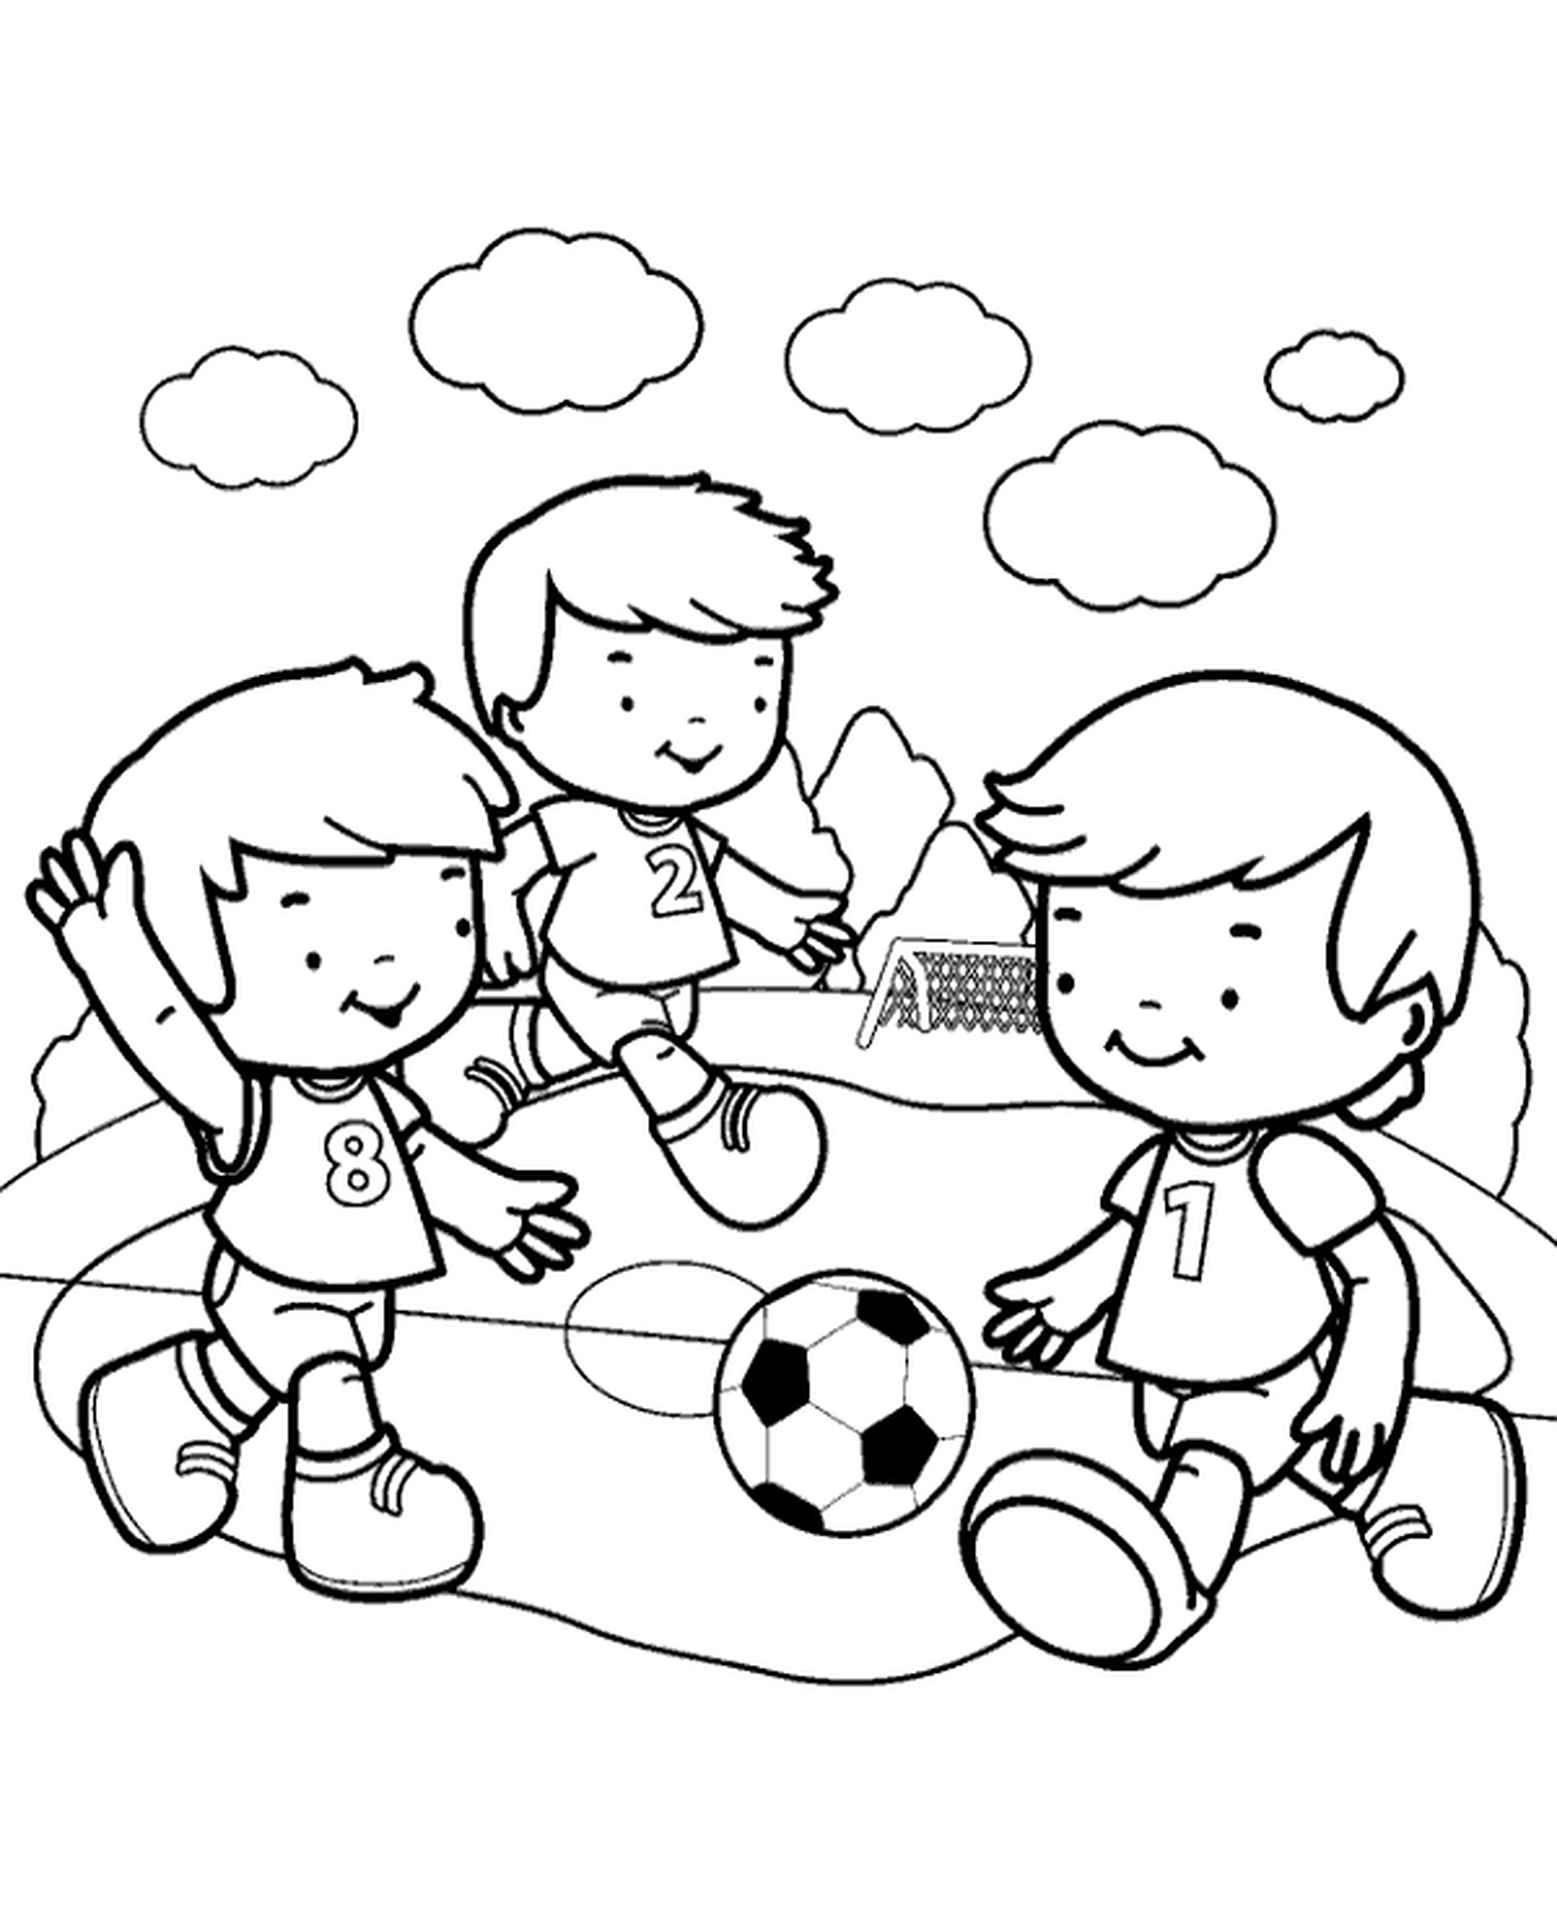 Игра в футбол раскраска для детей